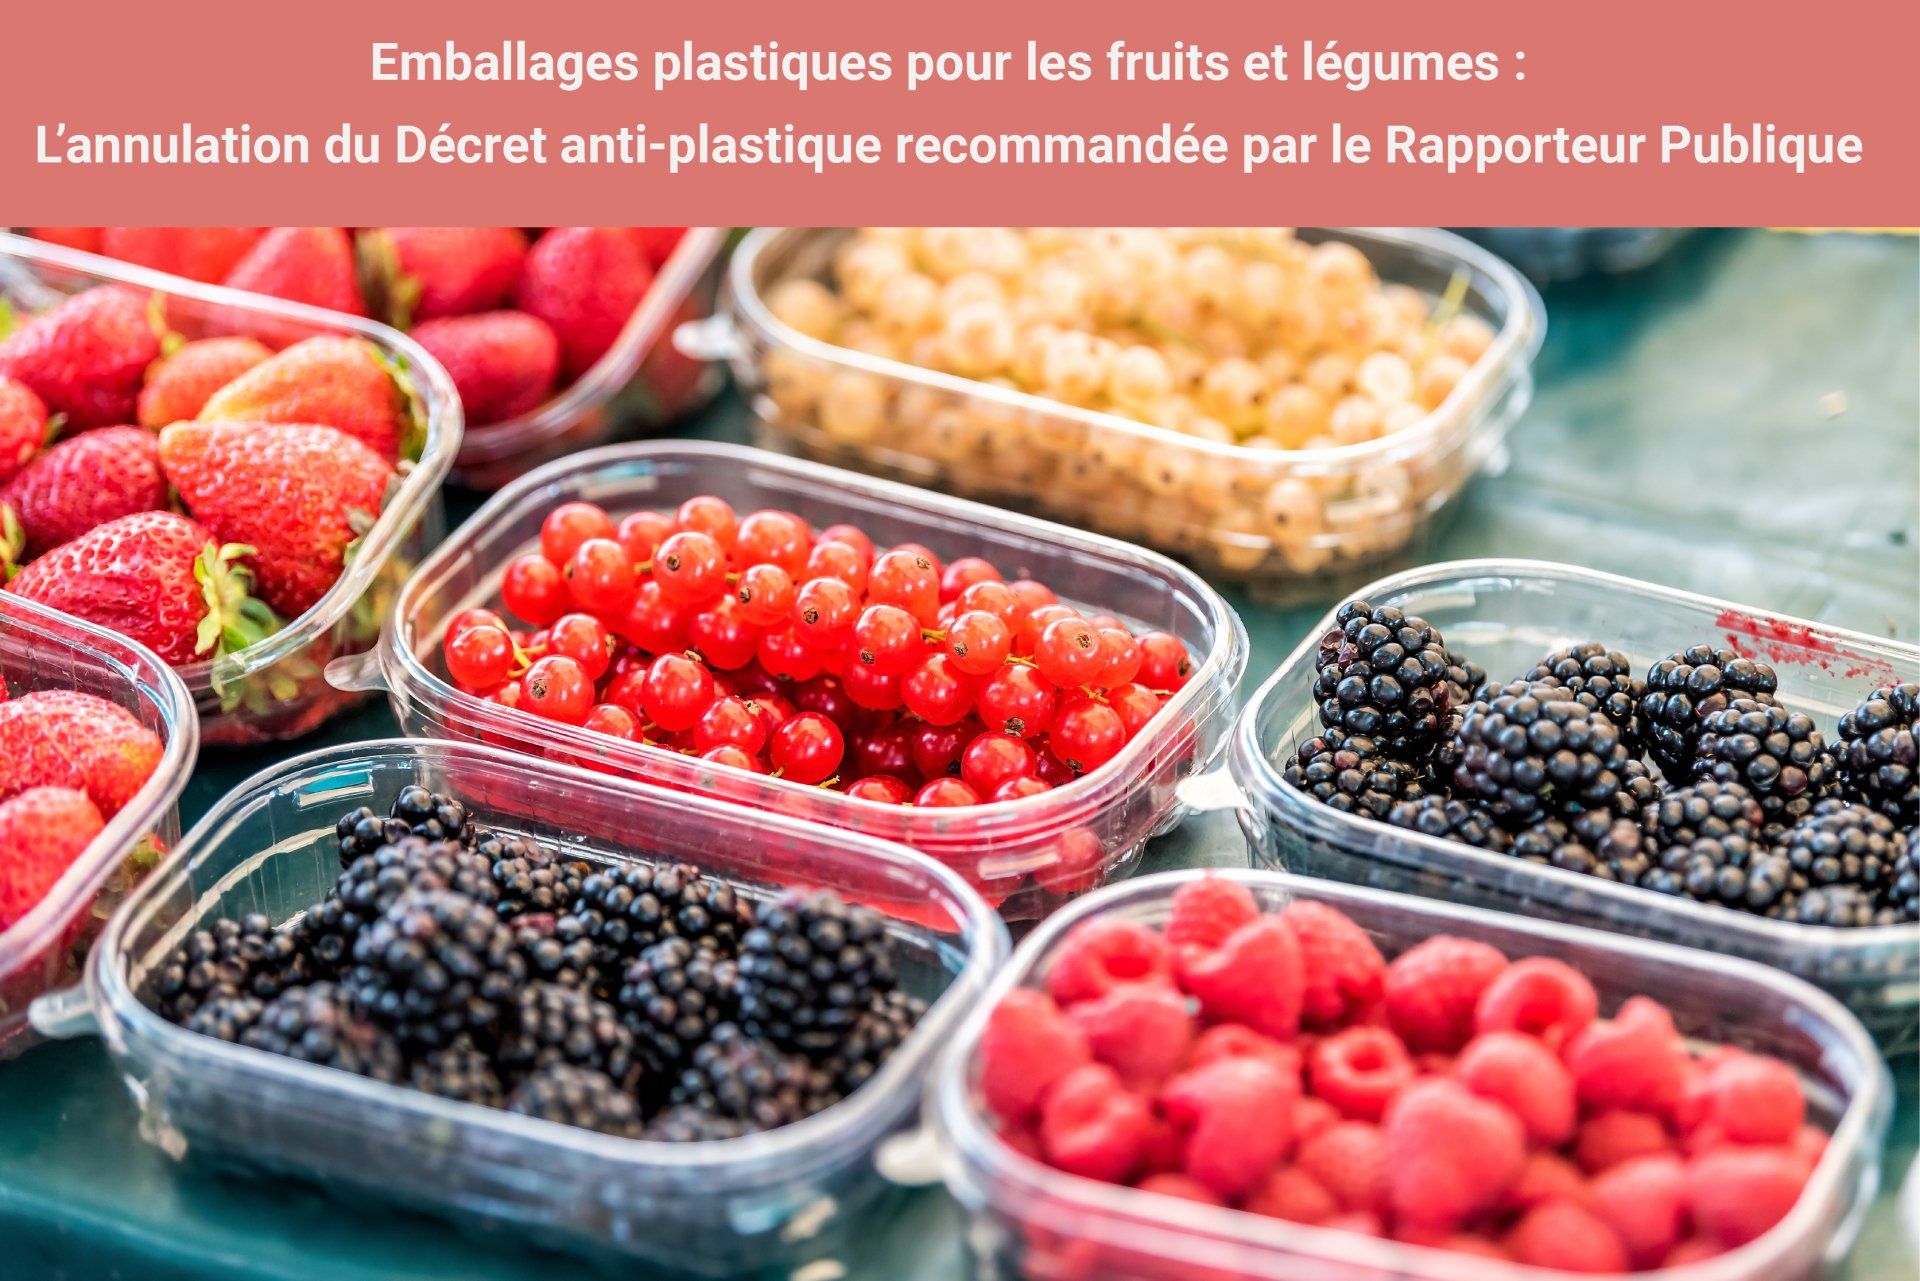 emballages-plastiques-fruits-légumes-agec-annulation-décret-rapporteur-public-plastalliance